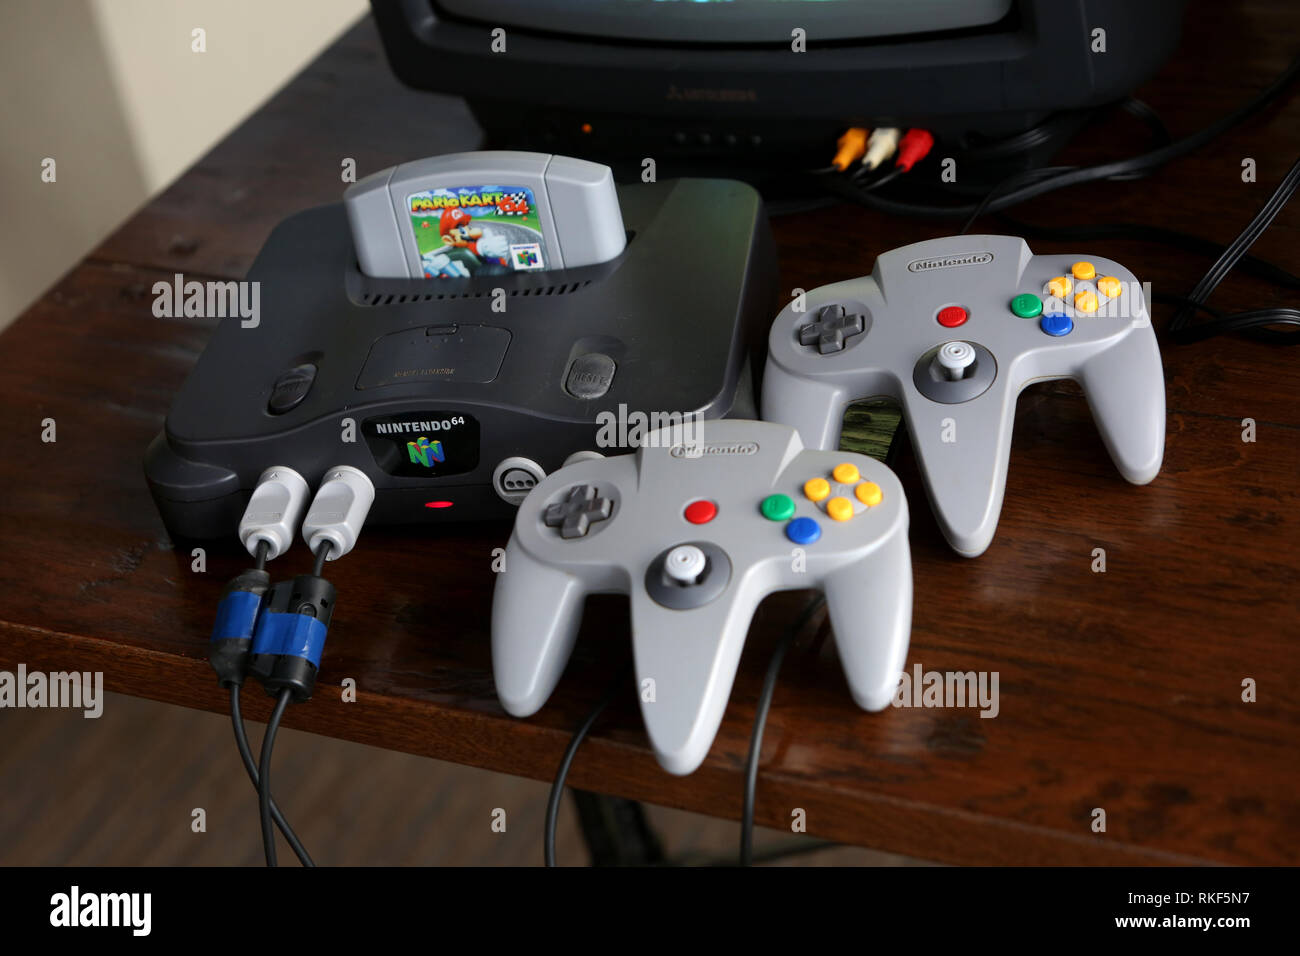 Mario 64 Stockfotos und -bilder Kaufen - Alamy